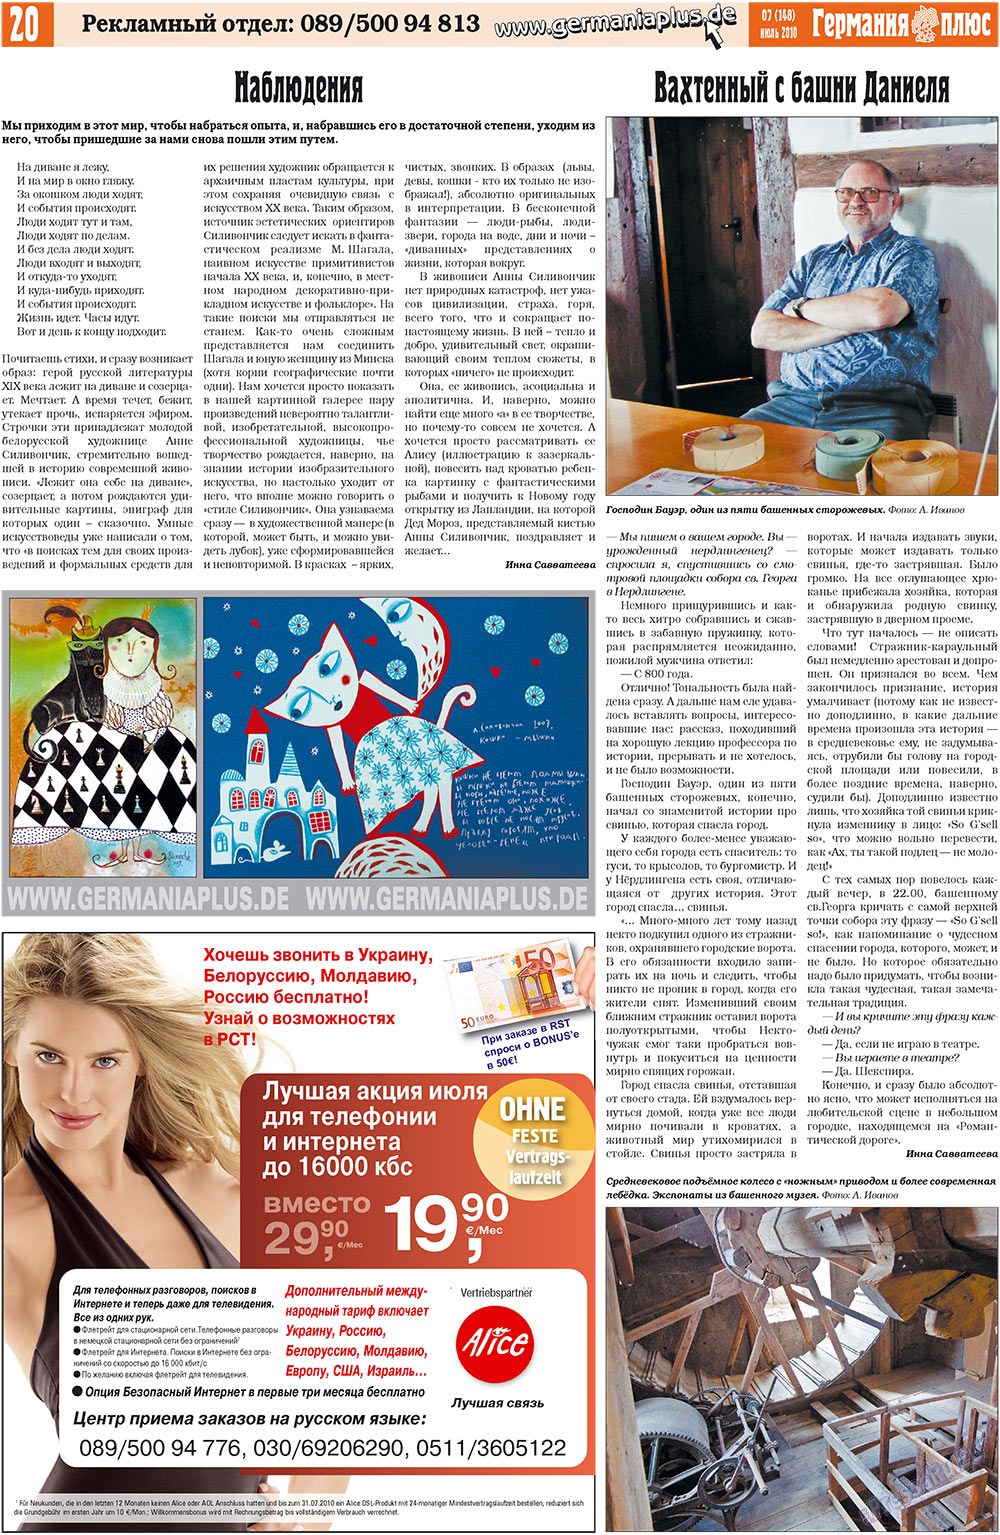 Германия плюс, газета. 2010 №7 стр.20